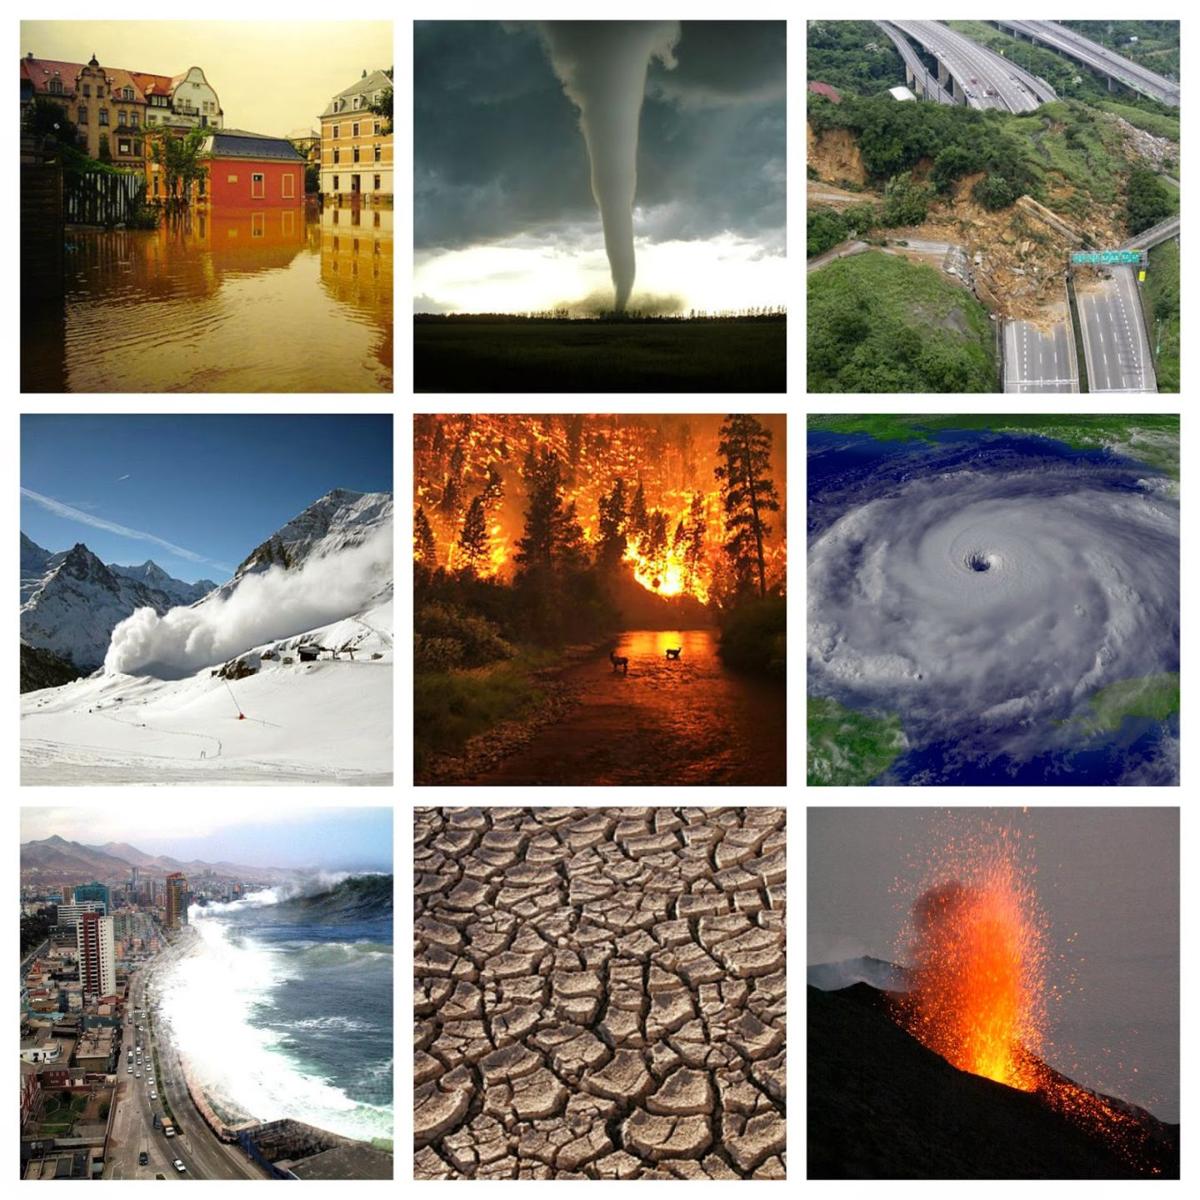 Resultado de imagen para natural disasters collage